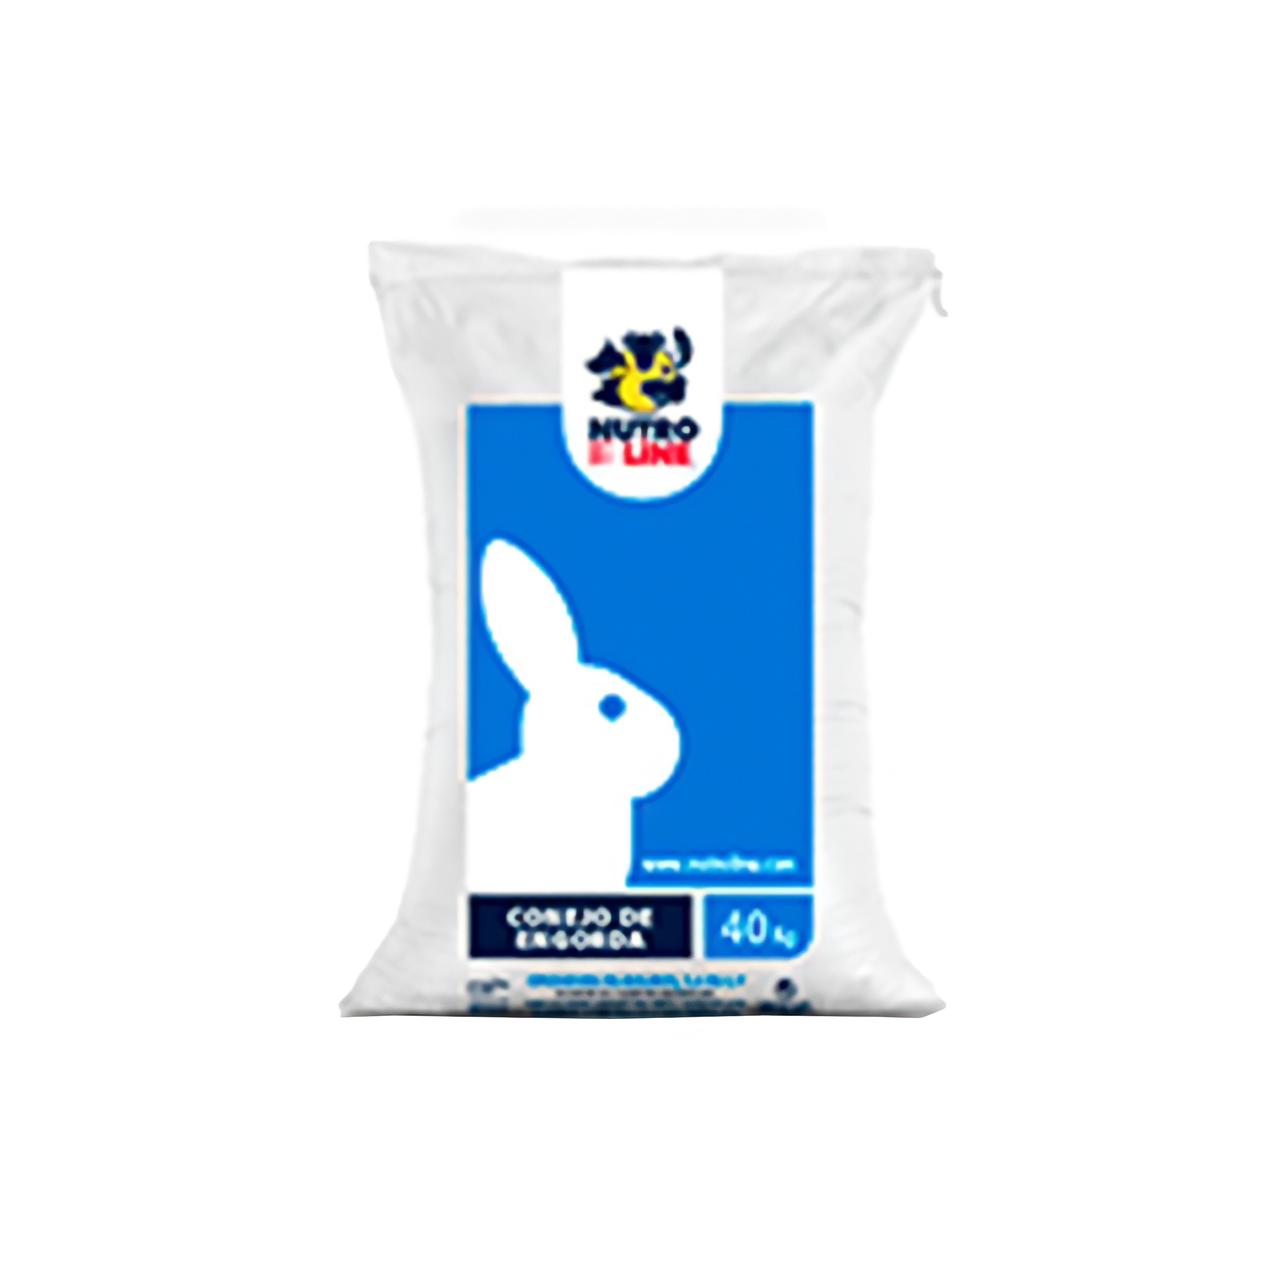 Conejo nutroline 16% Conejo 40KG